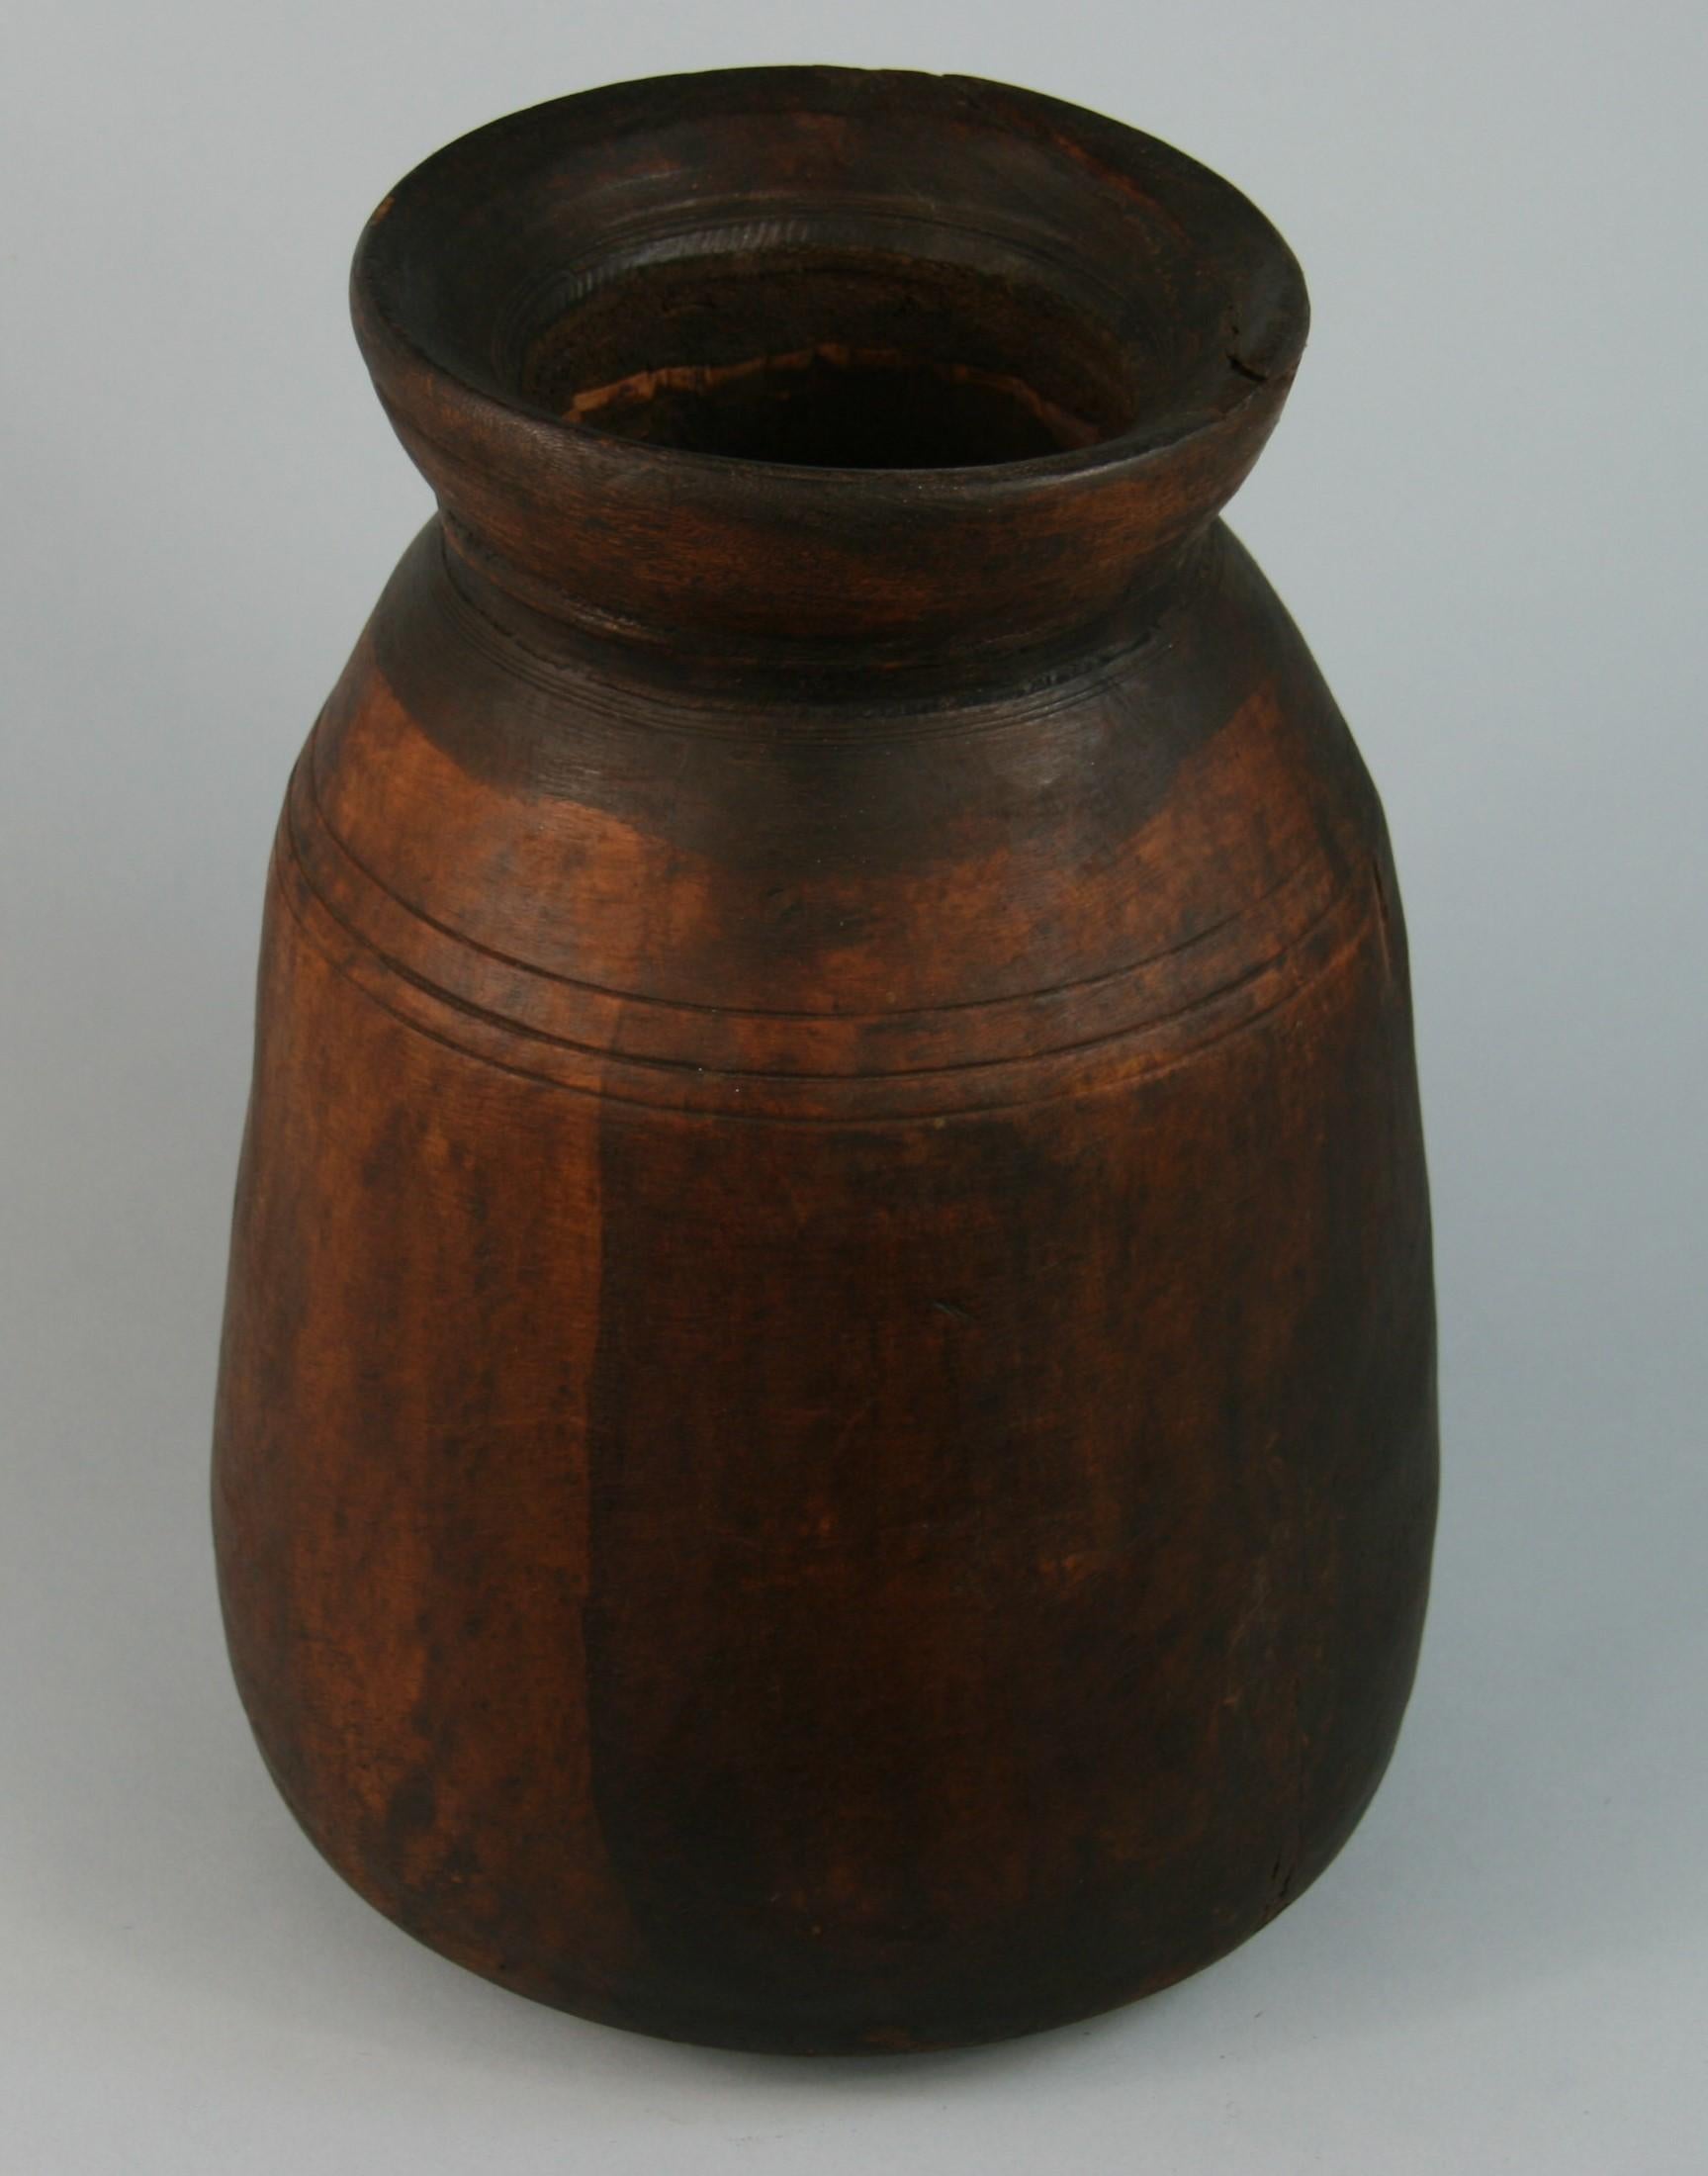 3-614 récipient/vase rustique en bois tourné à la main.